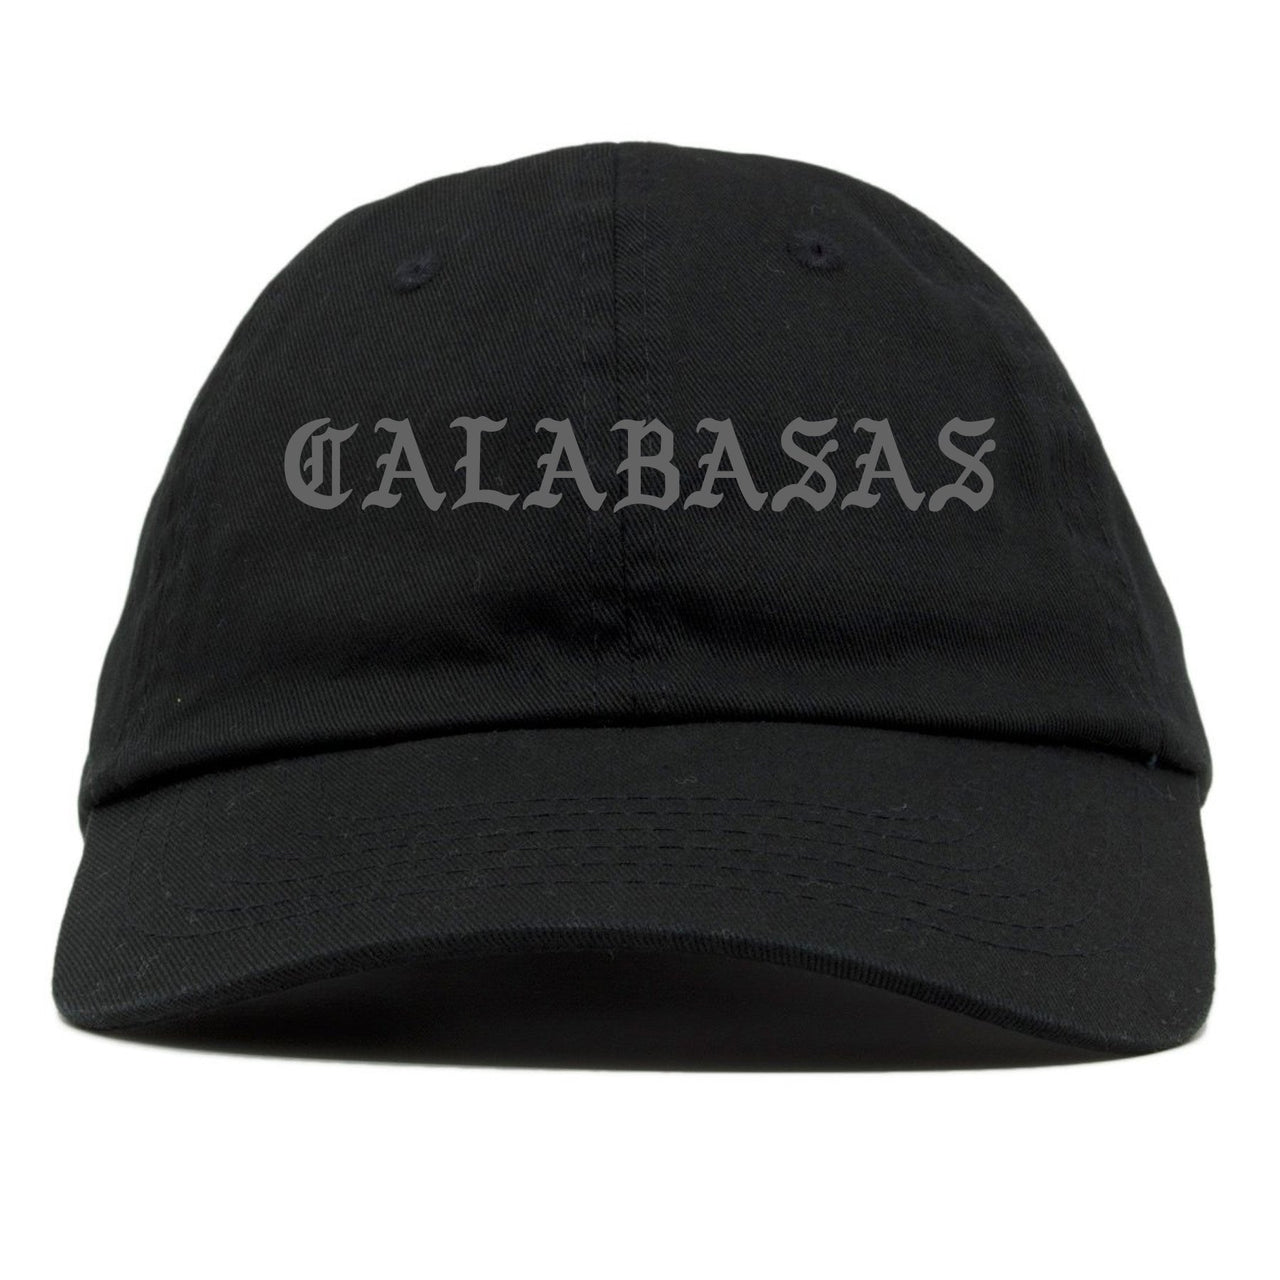 Vanta v2 700s Dad Hat | Calabasas, Black